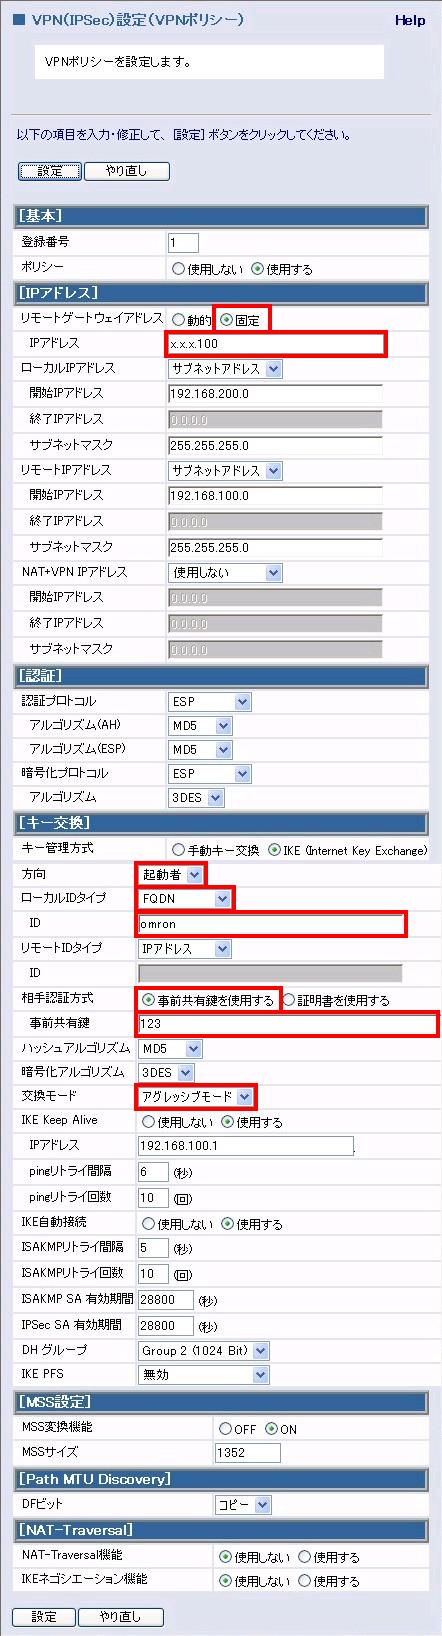 大阪側 MR304DV/MR404DV/MR504DVの設定　(動的IP)画面キャプチャー